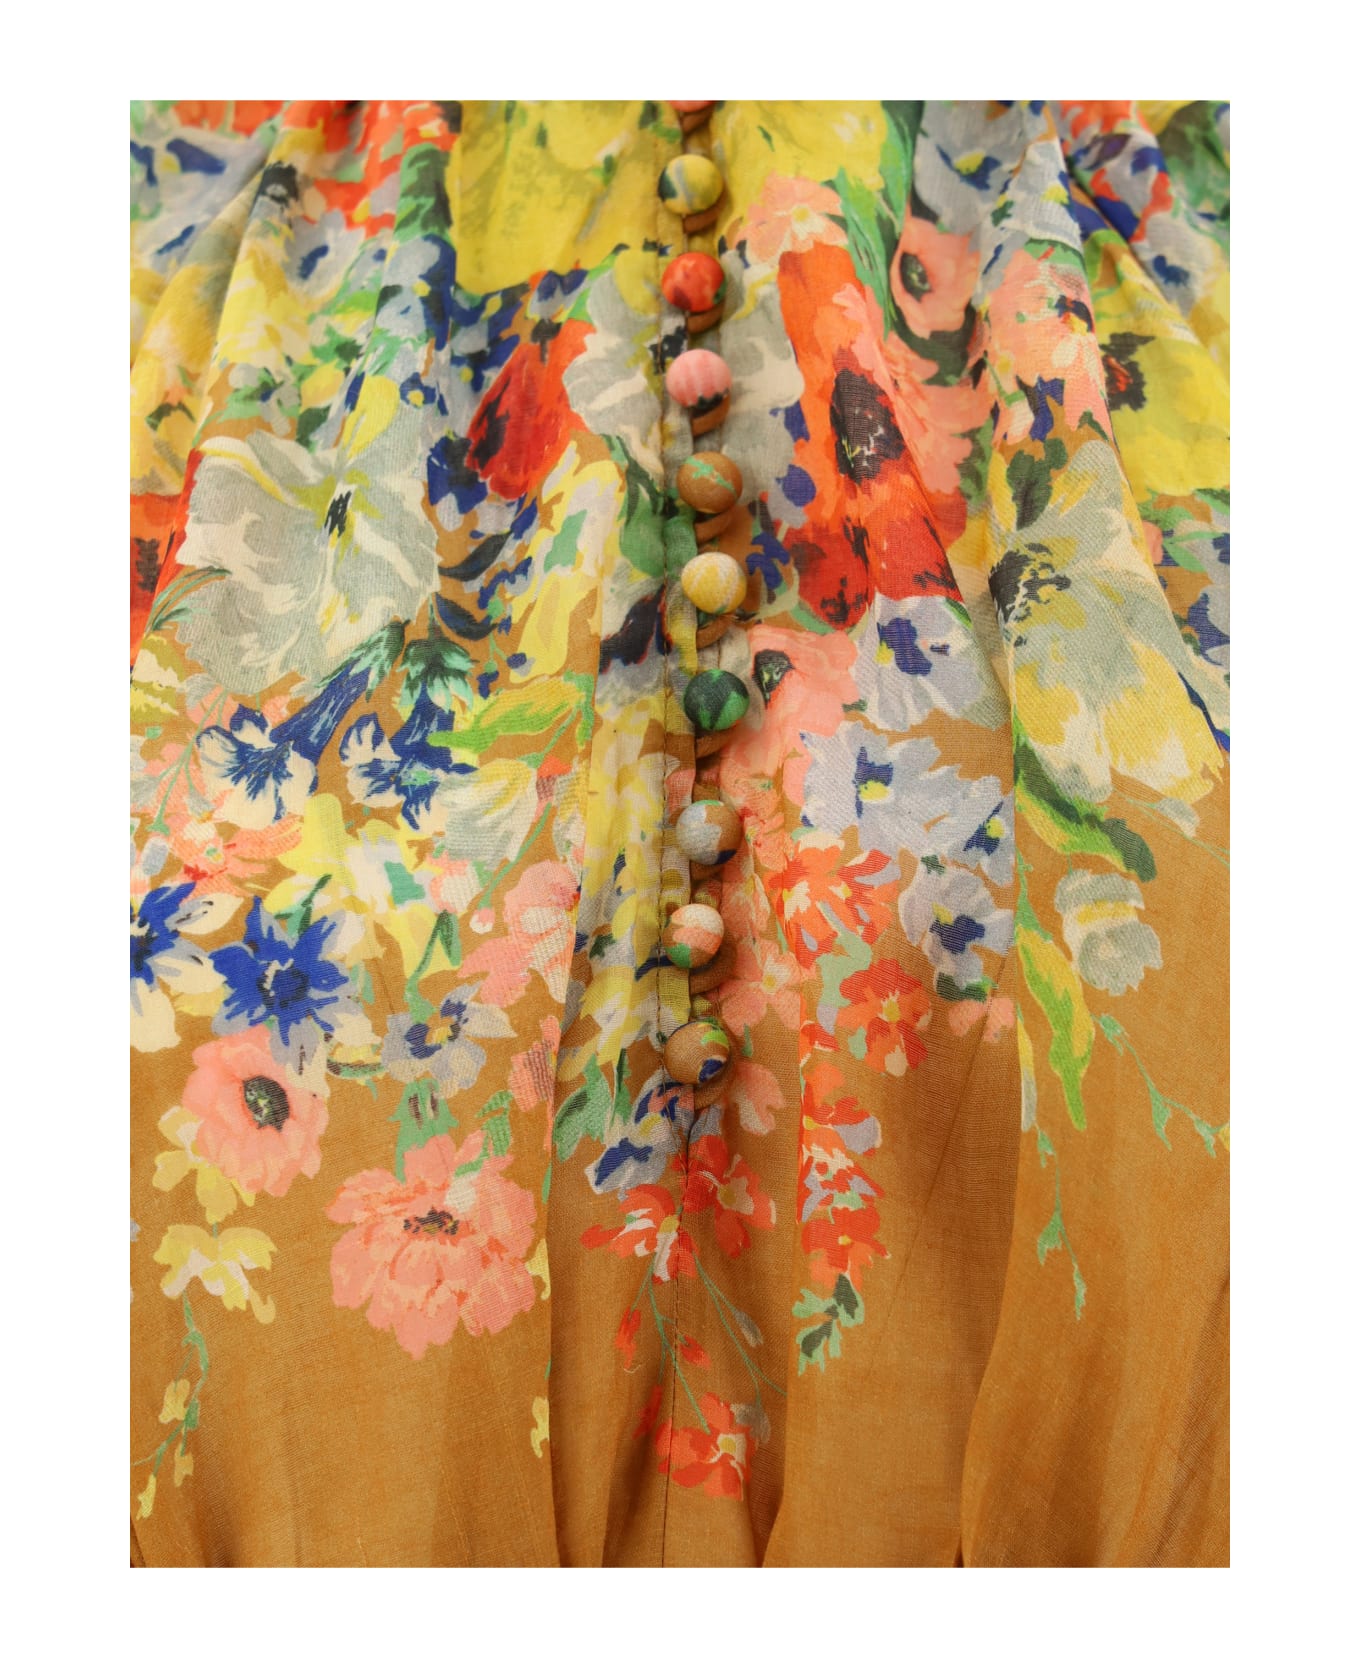 Zimmermann Alight Swing Long Dress - Tan Floral